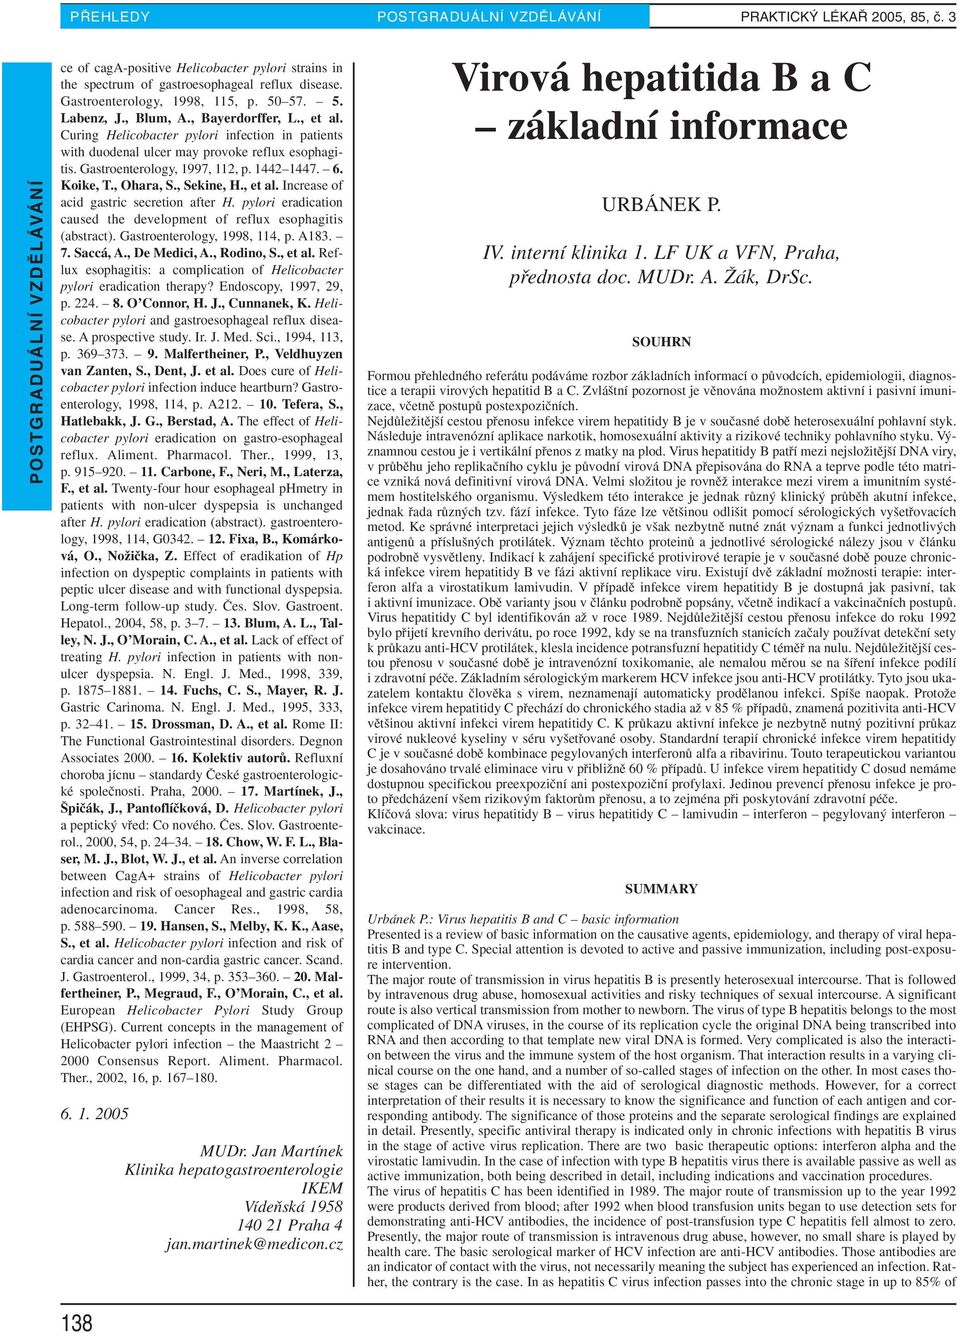 Gastroenterology, 1997, 112, p. 1442 1447. 6. Koike, T., Ohara, S., Sekine, H., et al. Increase of acid gastric secretion after H.